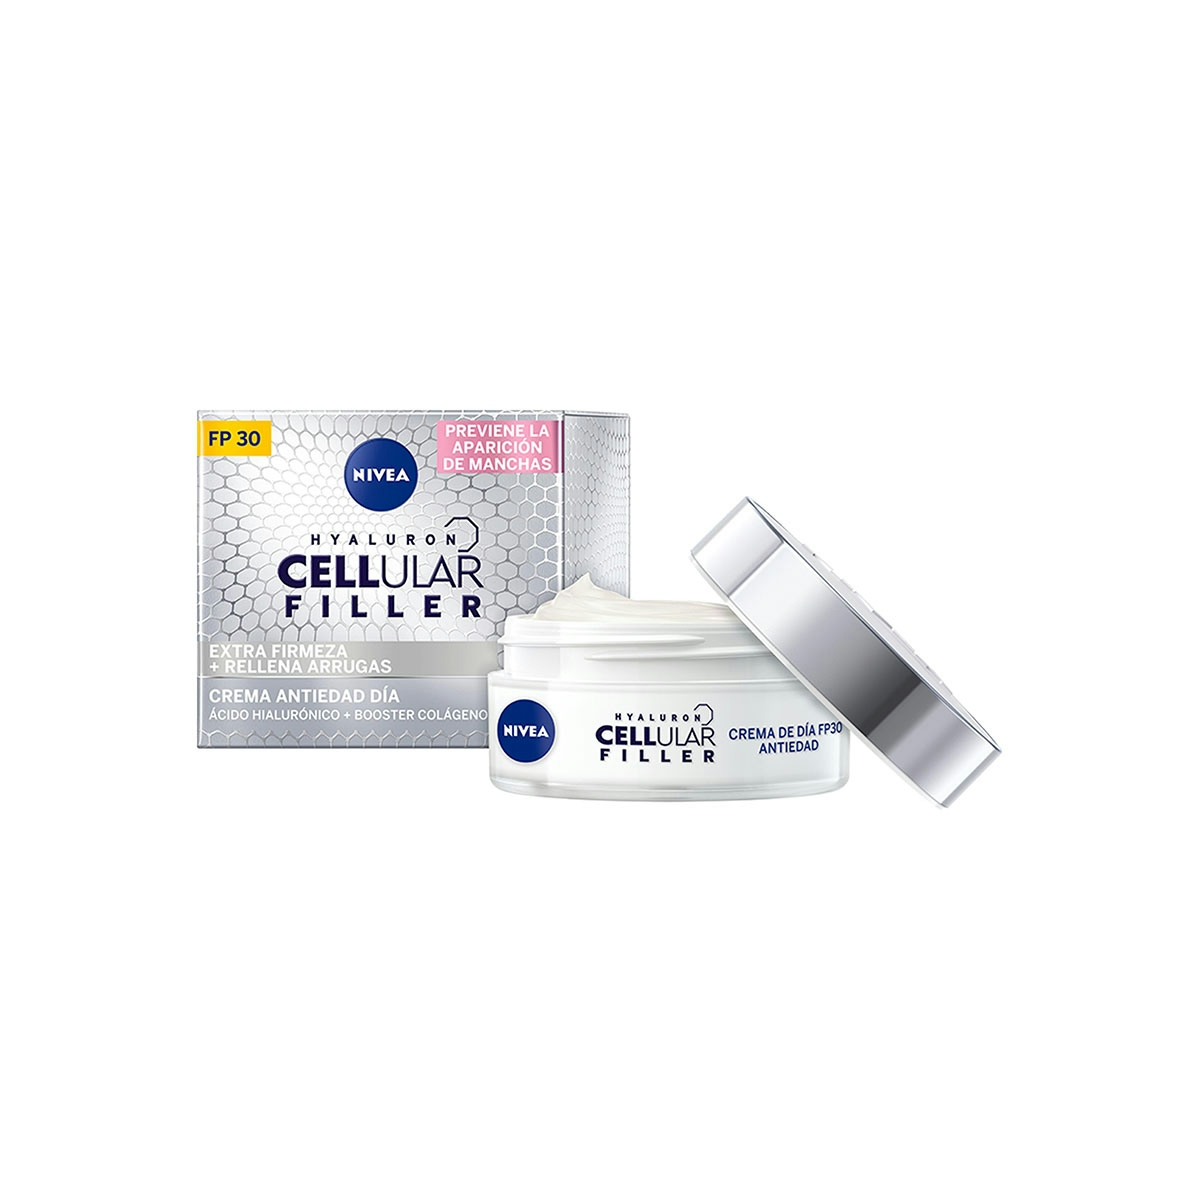 Crema antiantiedad NIVEA facial de día spf 30 Cellular 50 ml